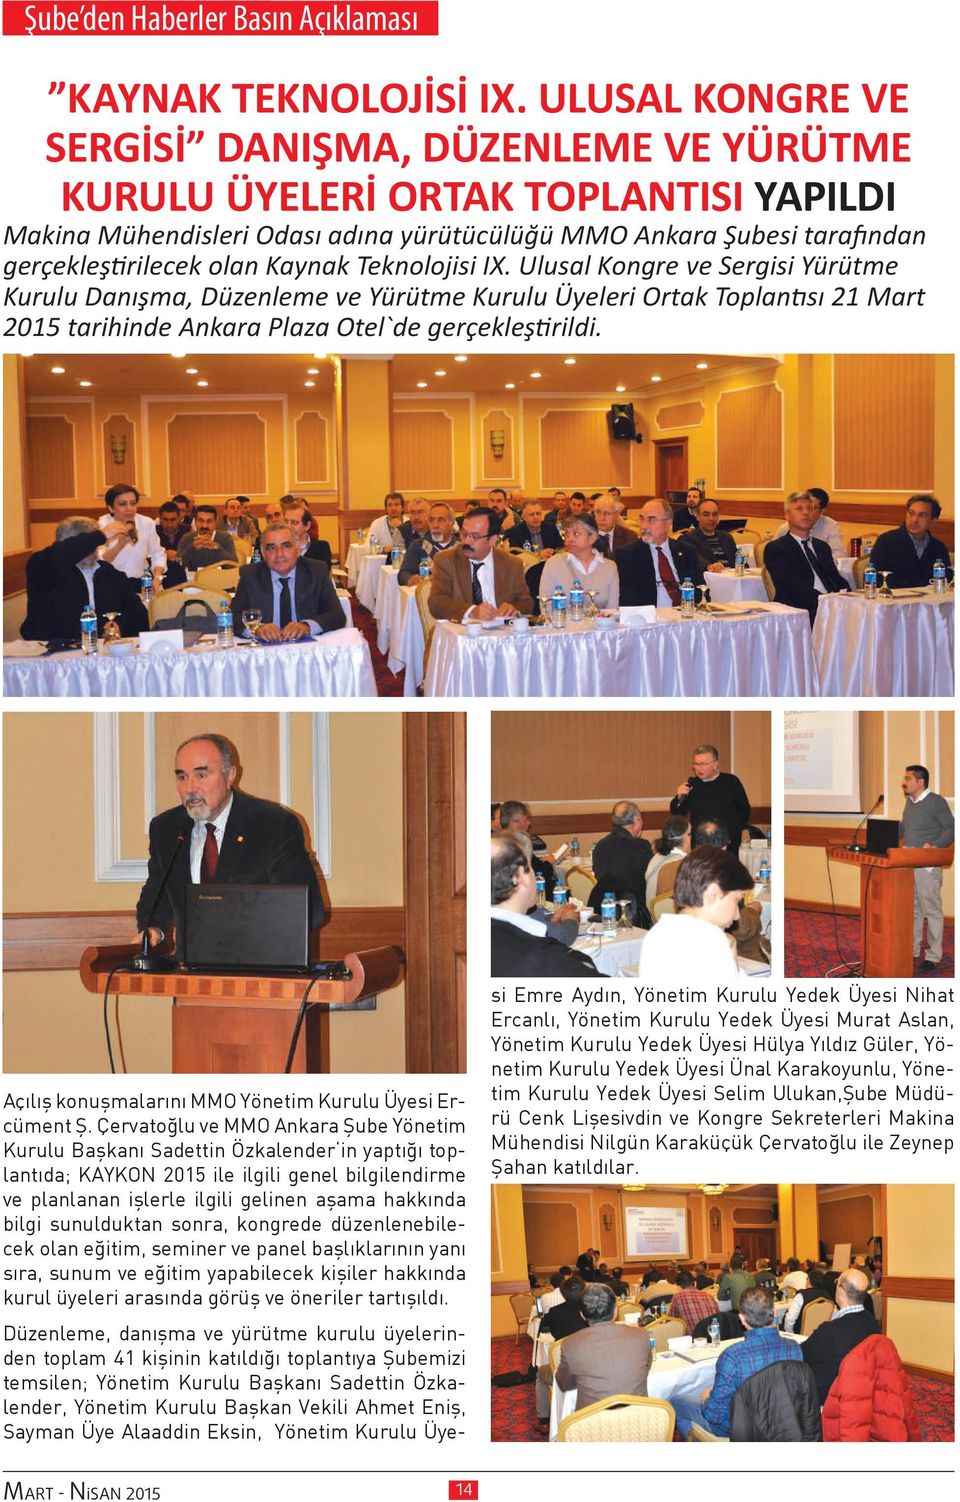 Teknolojisi IX. Ulusal Kongre ve Sergisi Yürütme Kurulu Danışma, Düzenleme ve Yürütme Kurulu Üyeleri Ortak Toplantısı 21 Mart 2015 tarihinde Ankara Plaza Otel`de gerçekleştirildi.